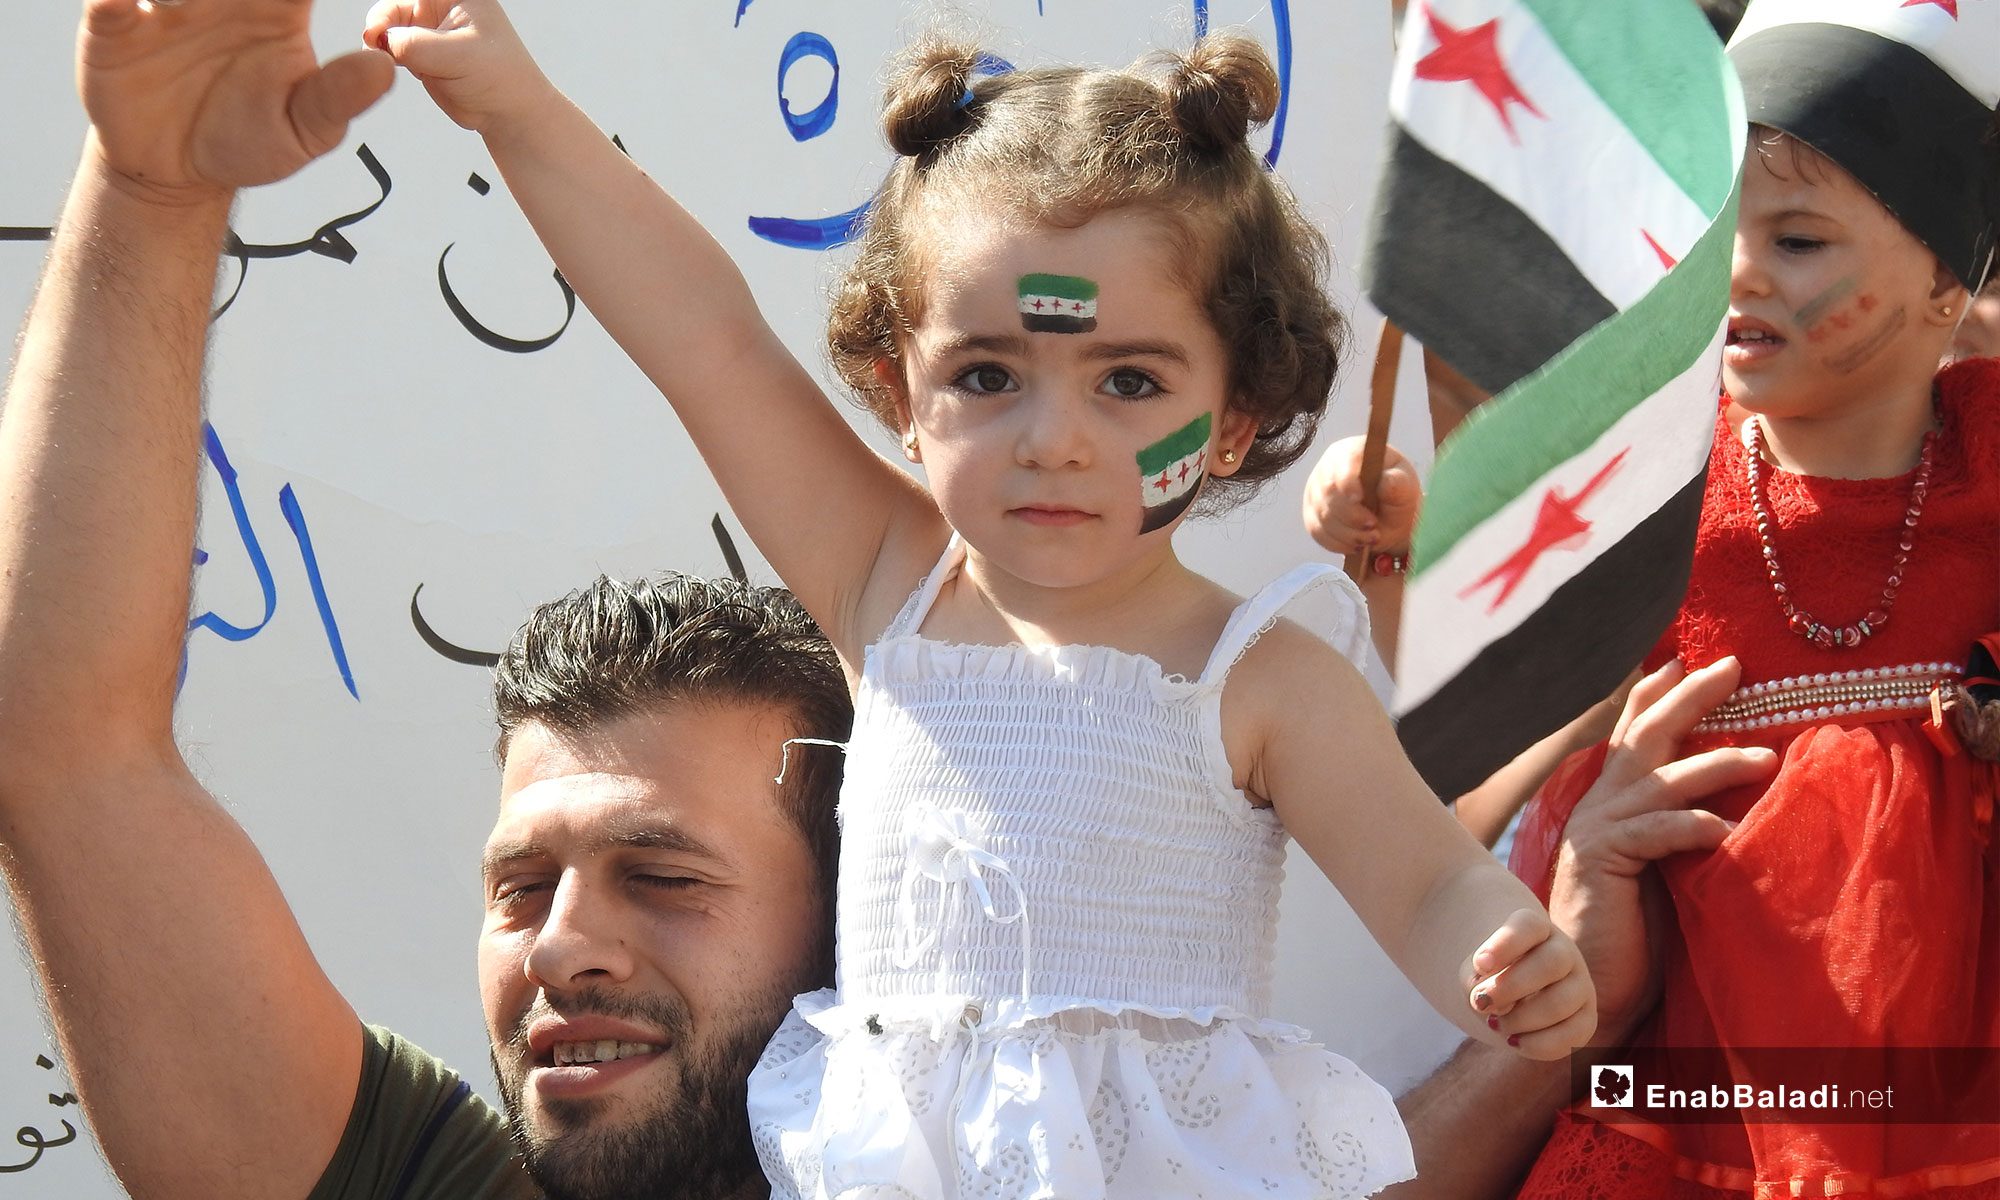 طفلة خلال مظاهرات في بلدة مارع بريف حلب طالبت بإسقاط النظام السوري- 5 تشرين الأول 2018 (عنب بلدي)